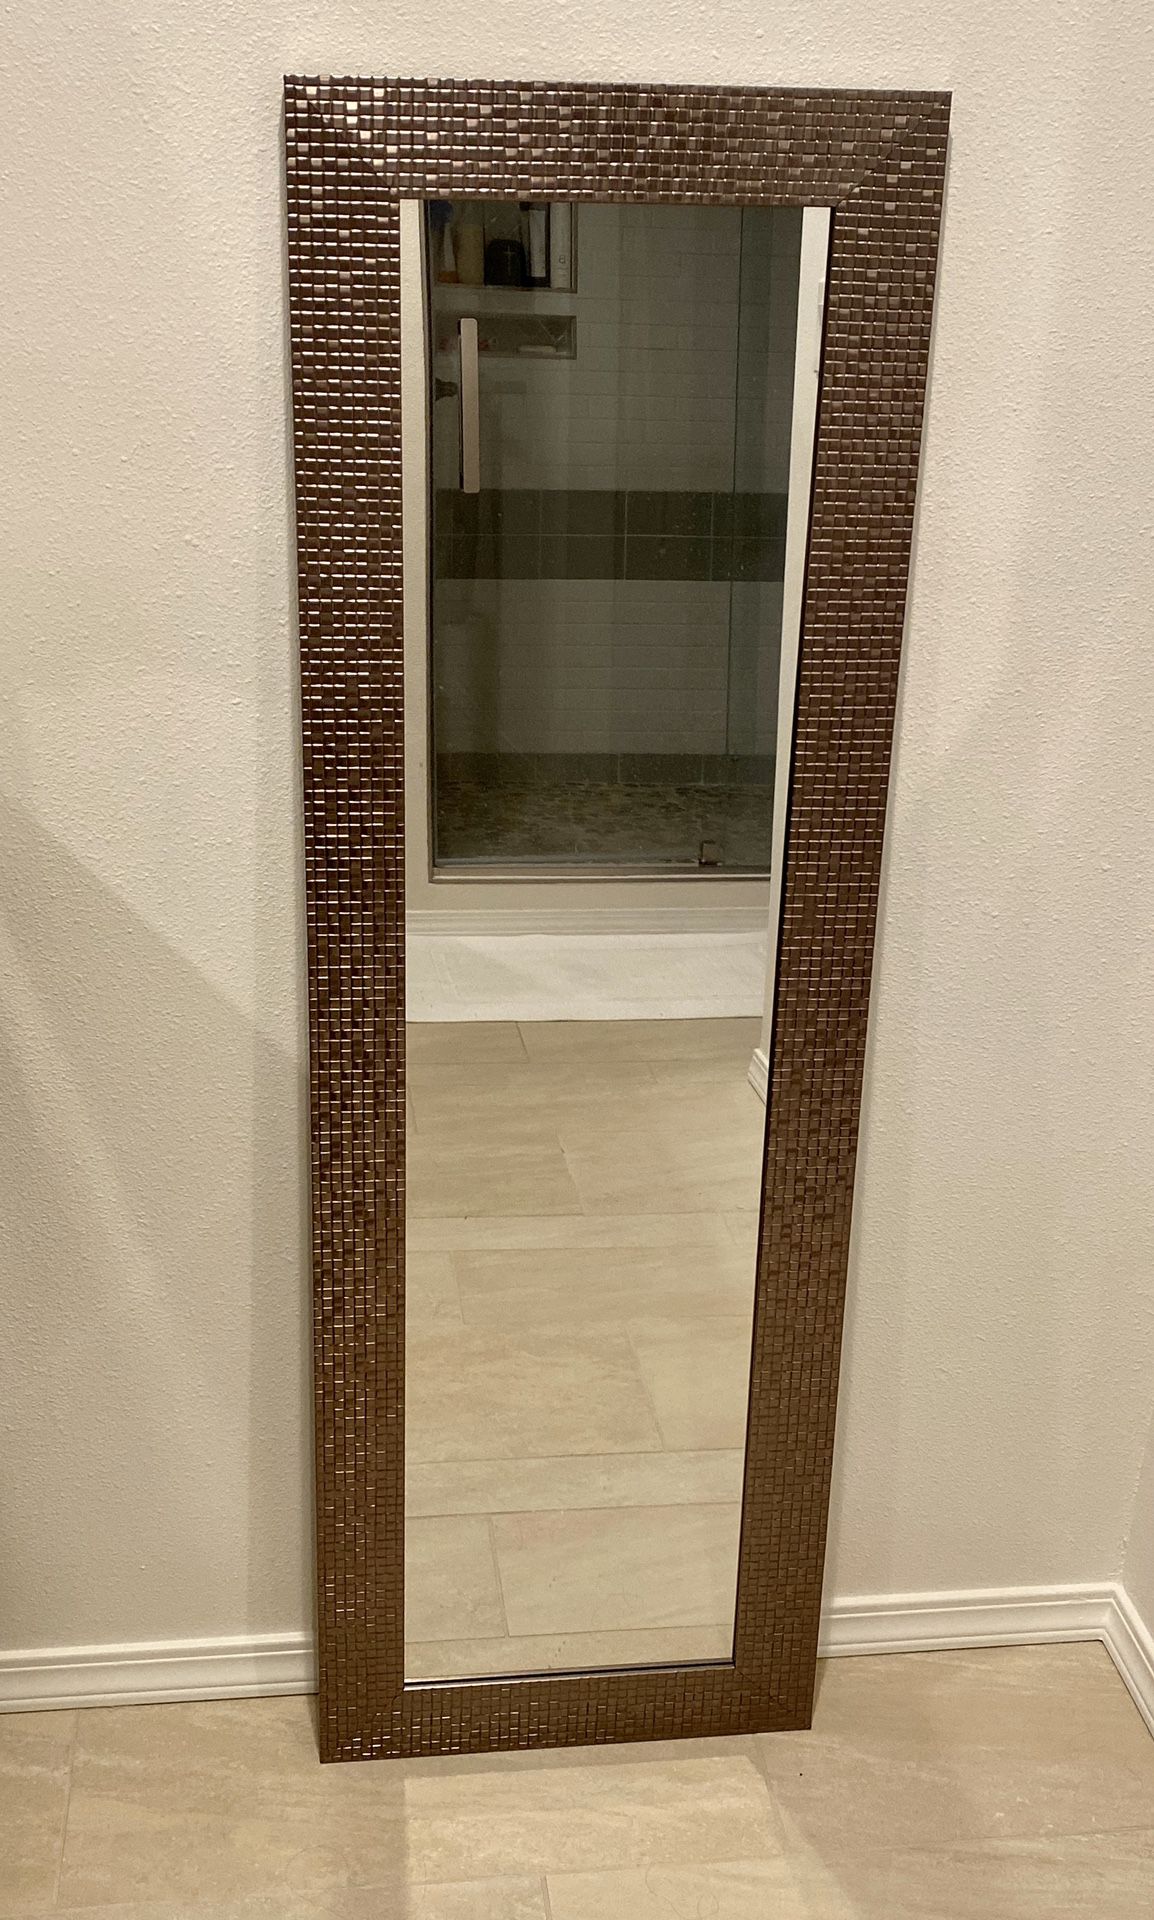 Mirror - Over door hanging or wall mounted